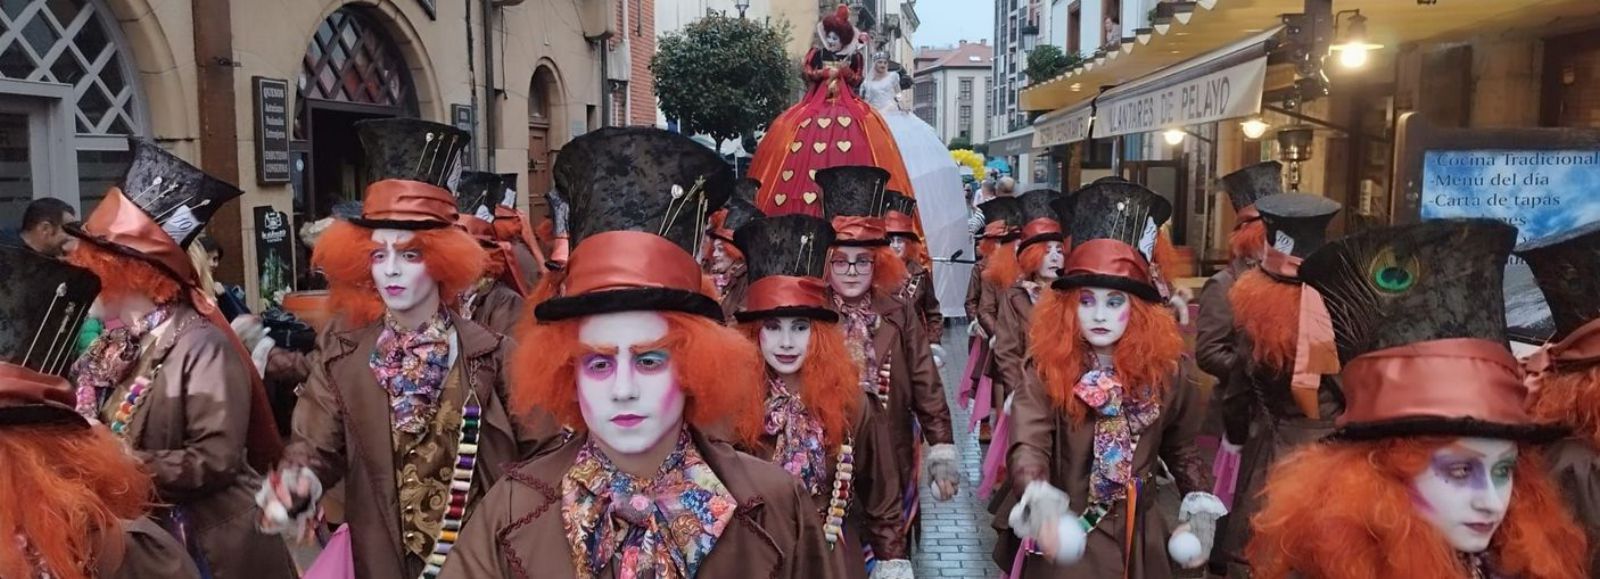 Desfiles del Carnaval de Cangas de Onís del pasado año.